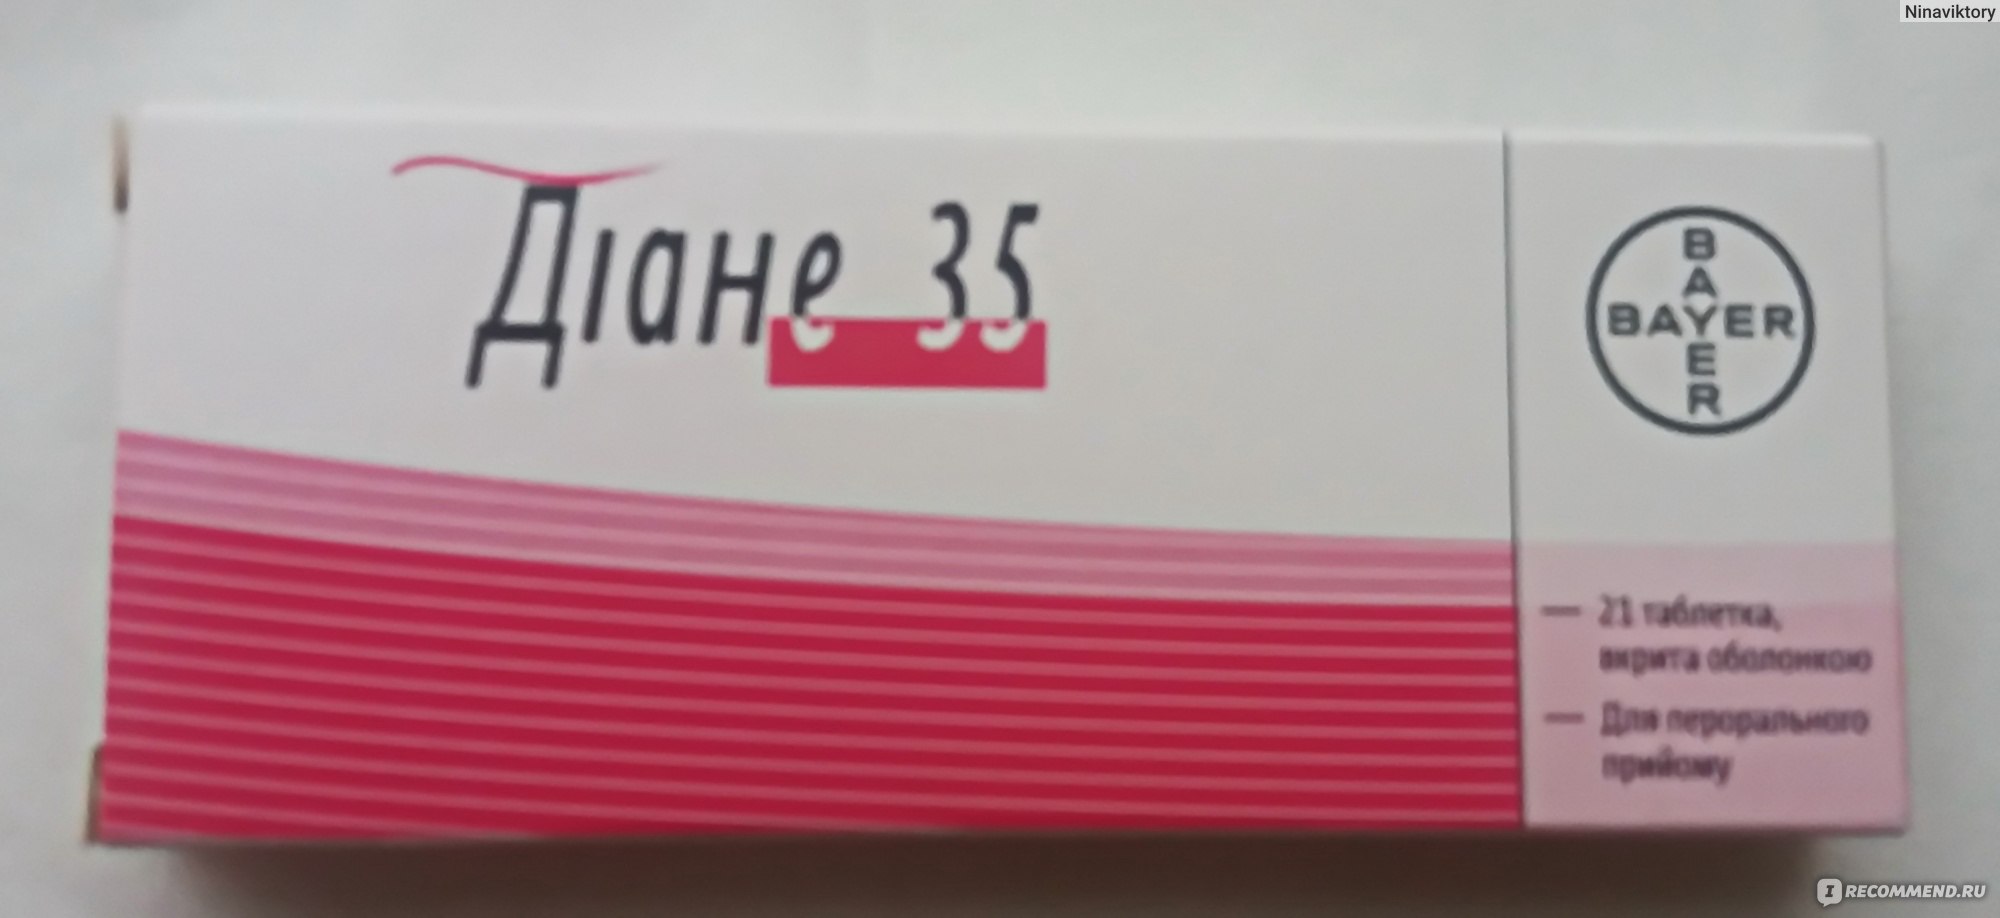 Диане 35 состав. Противозачаточные таблетки Диане 35. Диане-35 таблетки. Диане 35 упаковка.